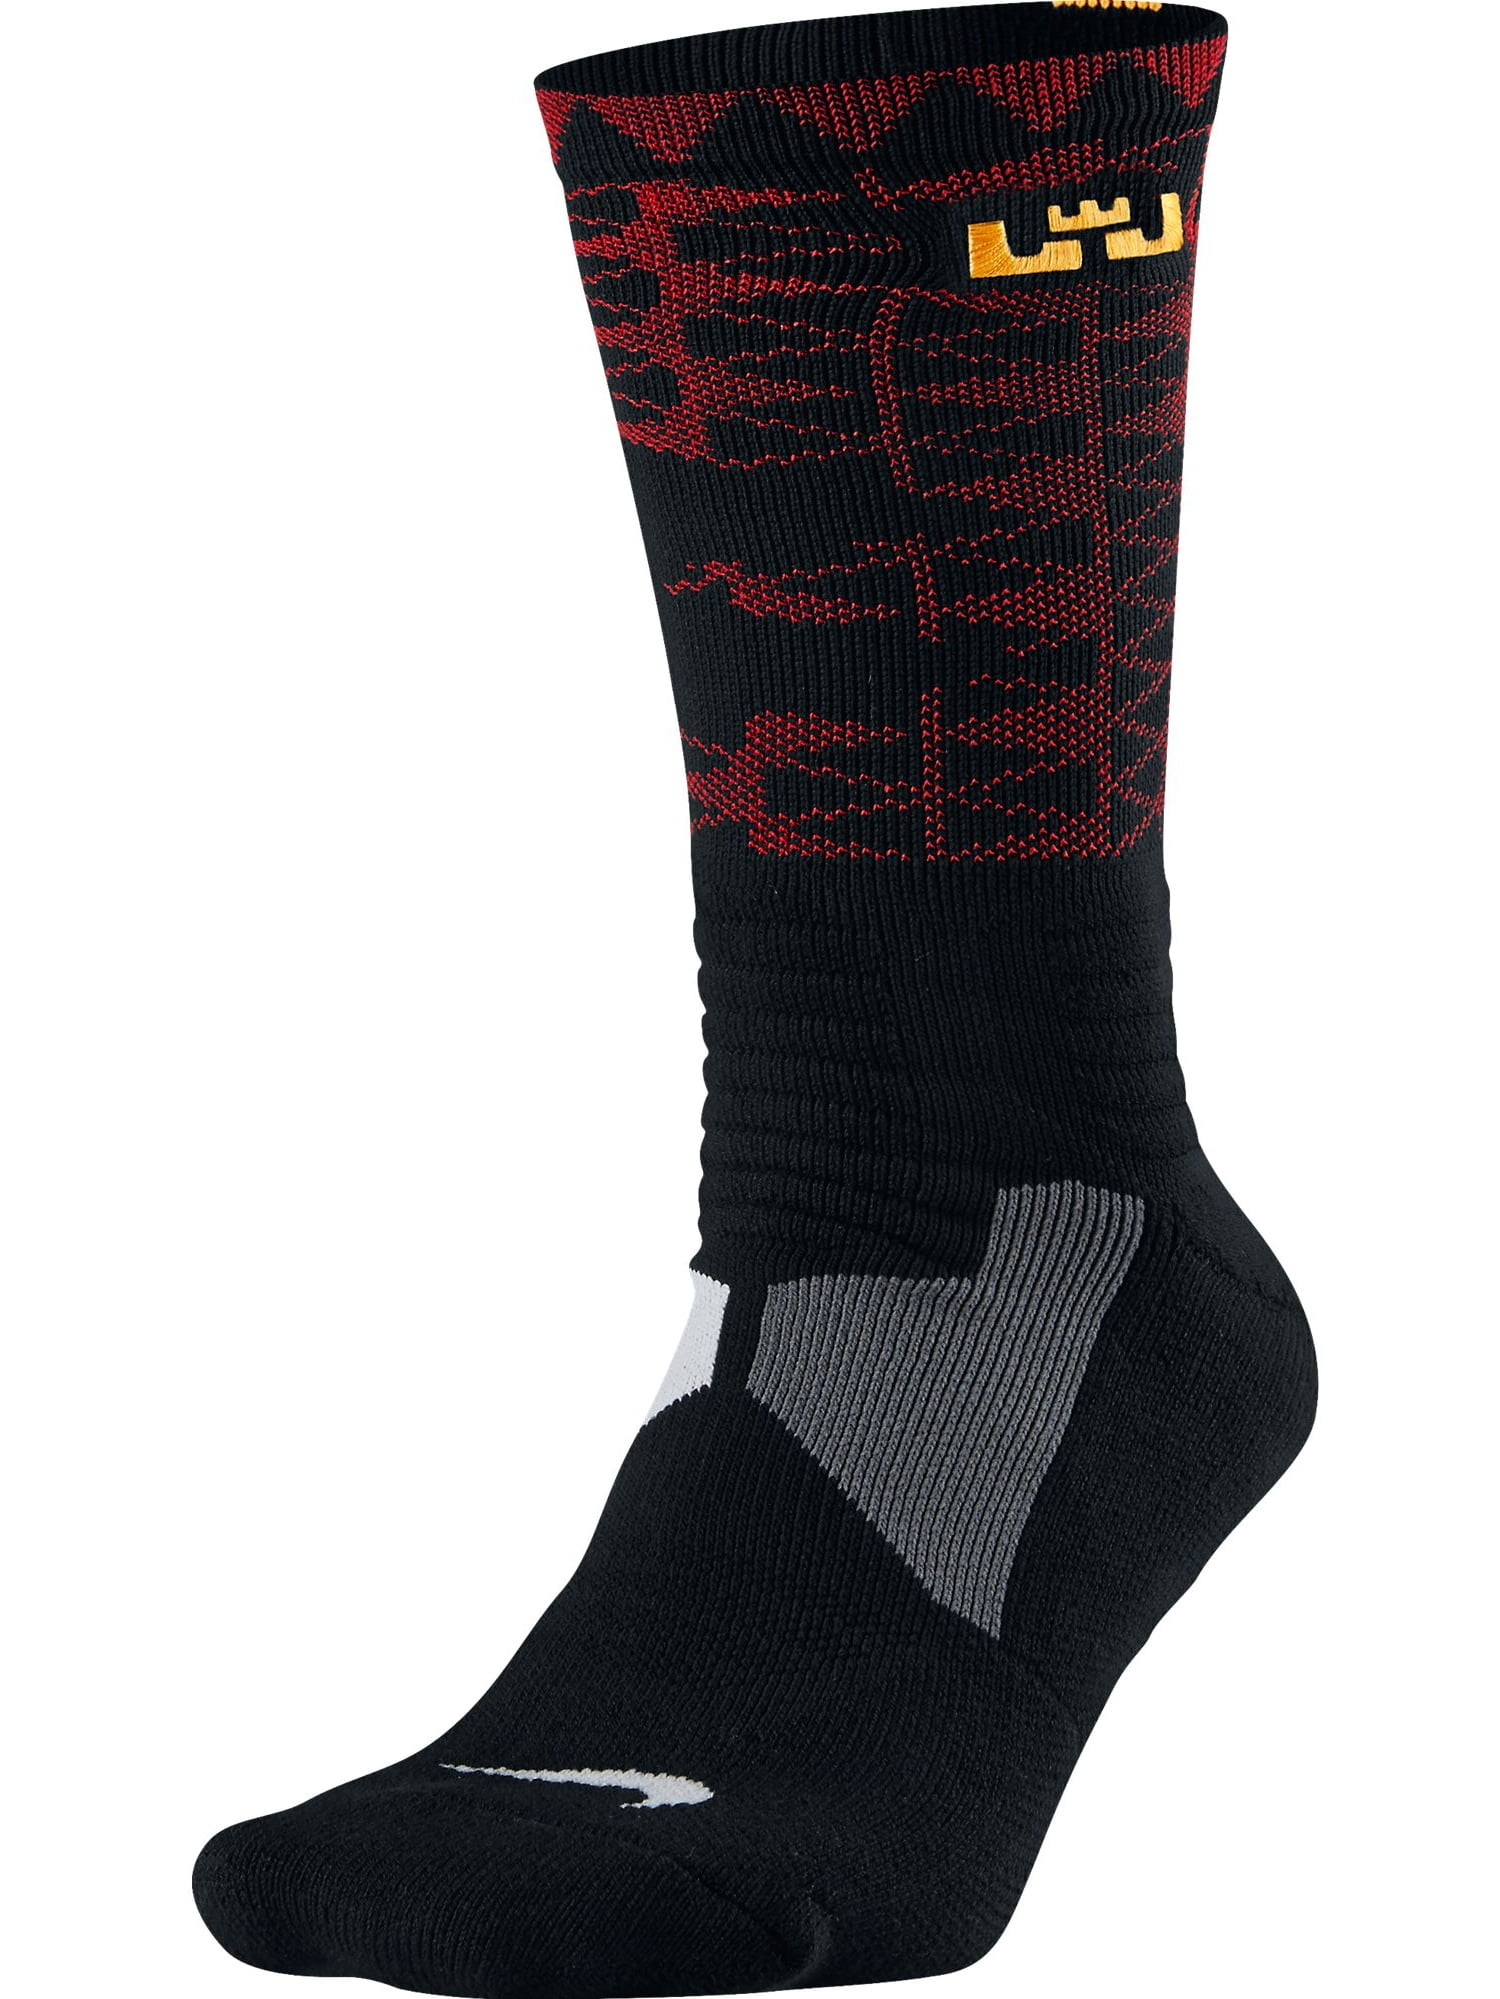 Nike Lebron Hyper Elite Men's Basketball Socks Black/University Gold - Walmart.com